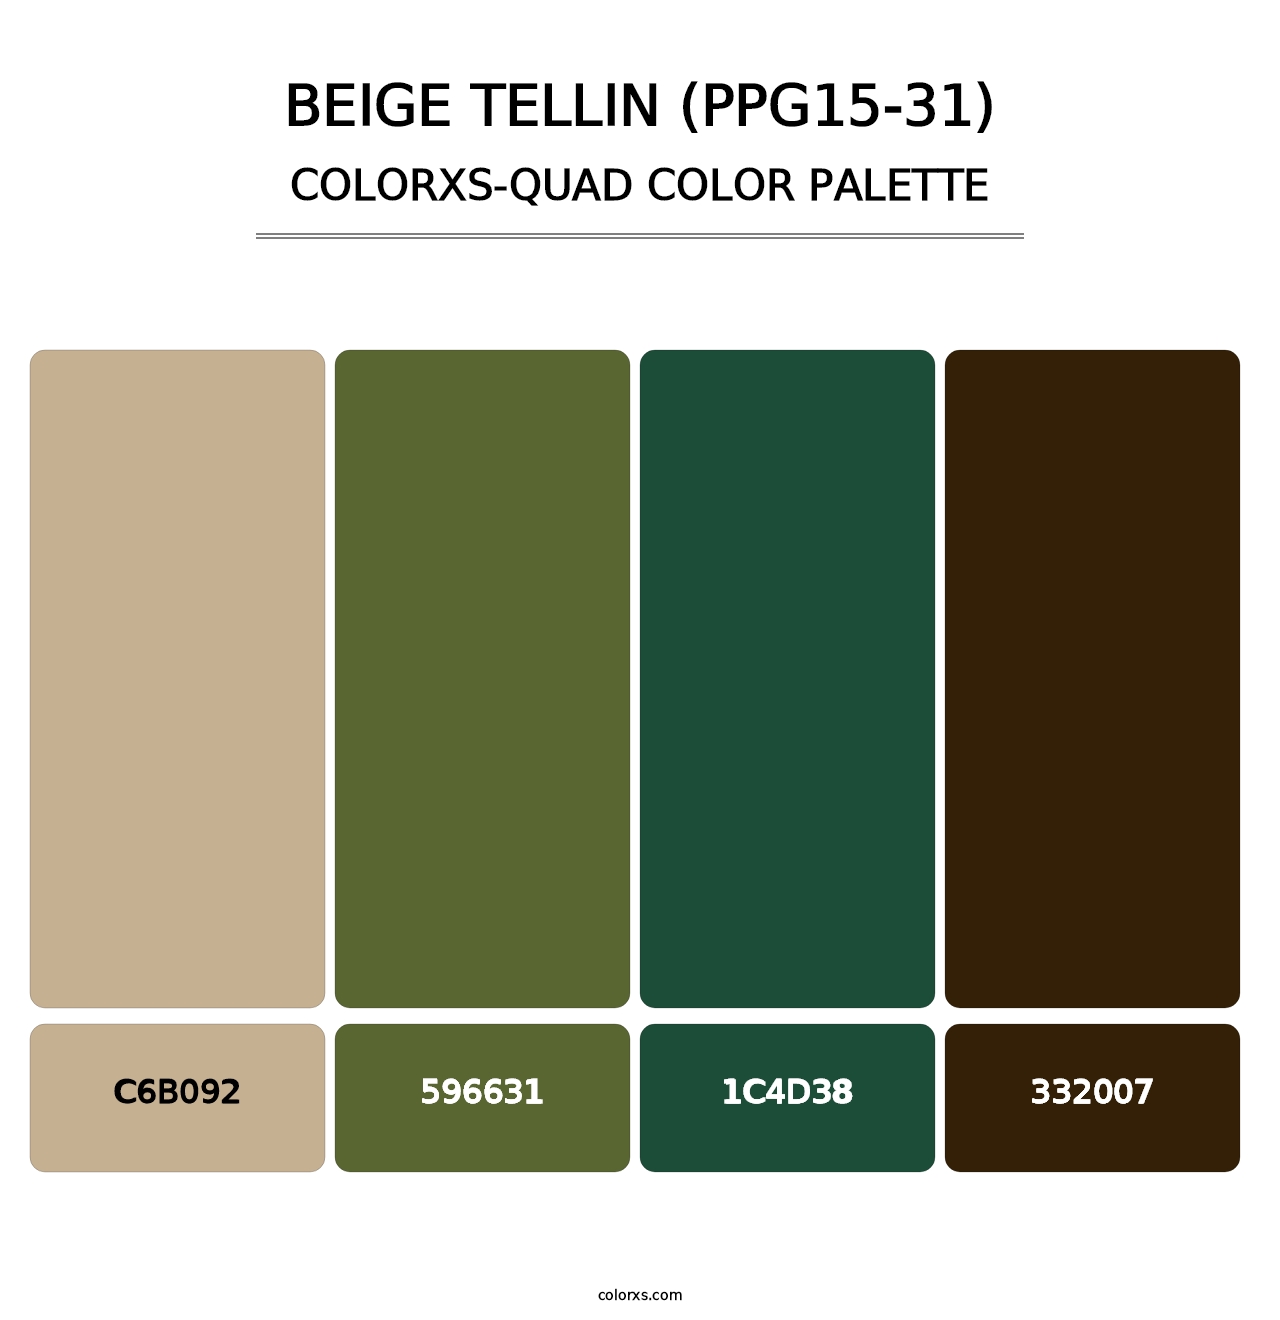 Beige Tellin (PPG15-31) - Colorxs Quad Palette